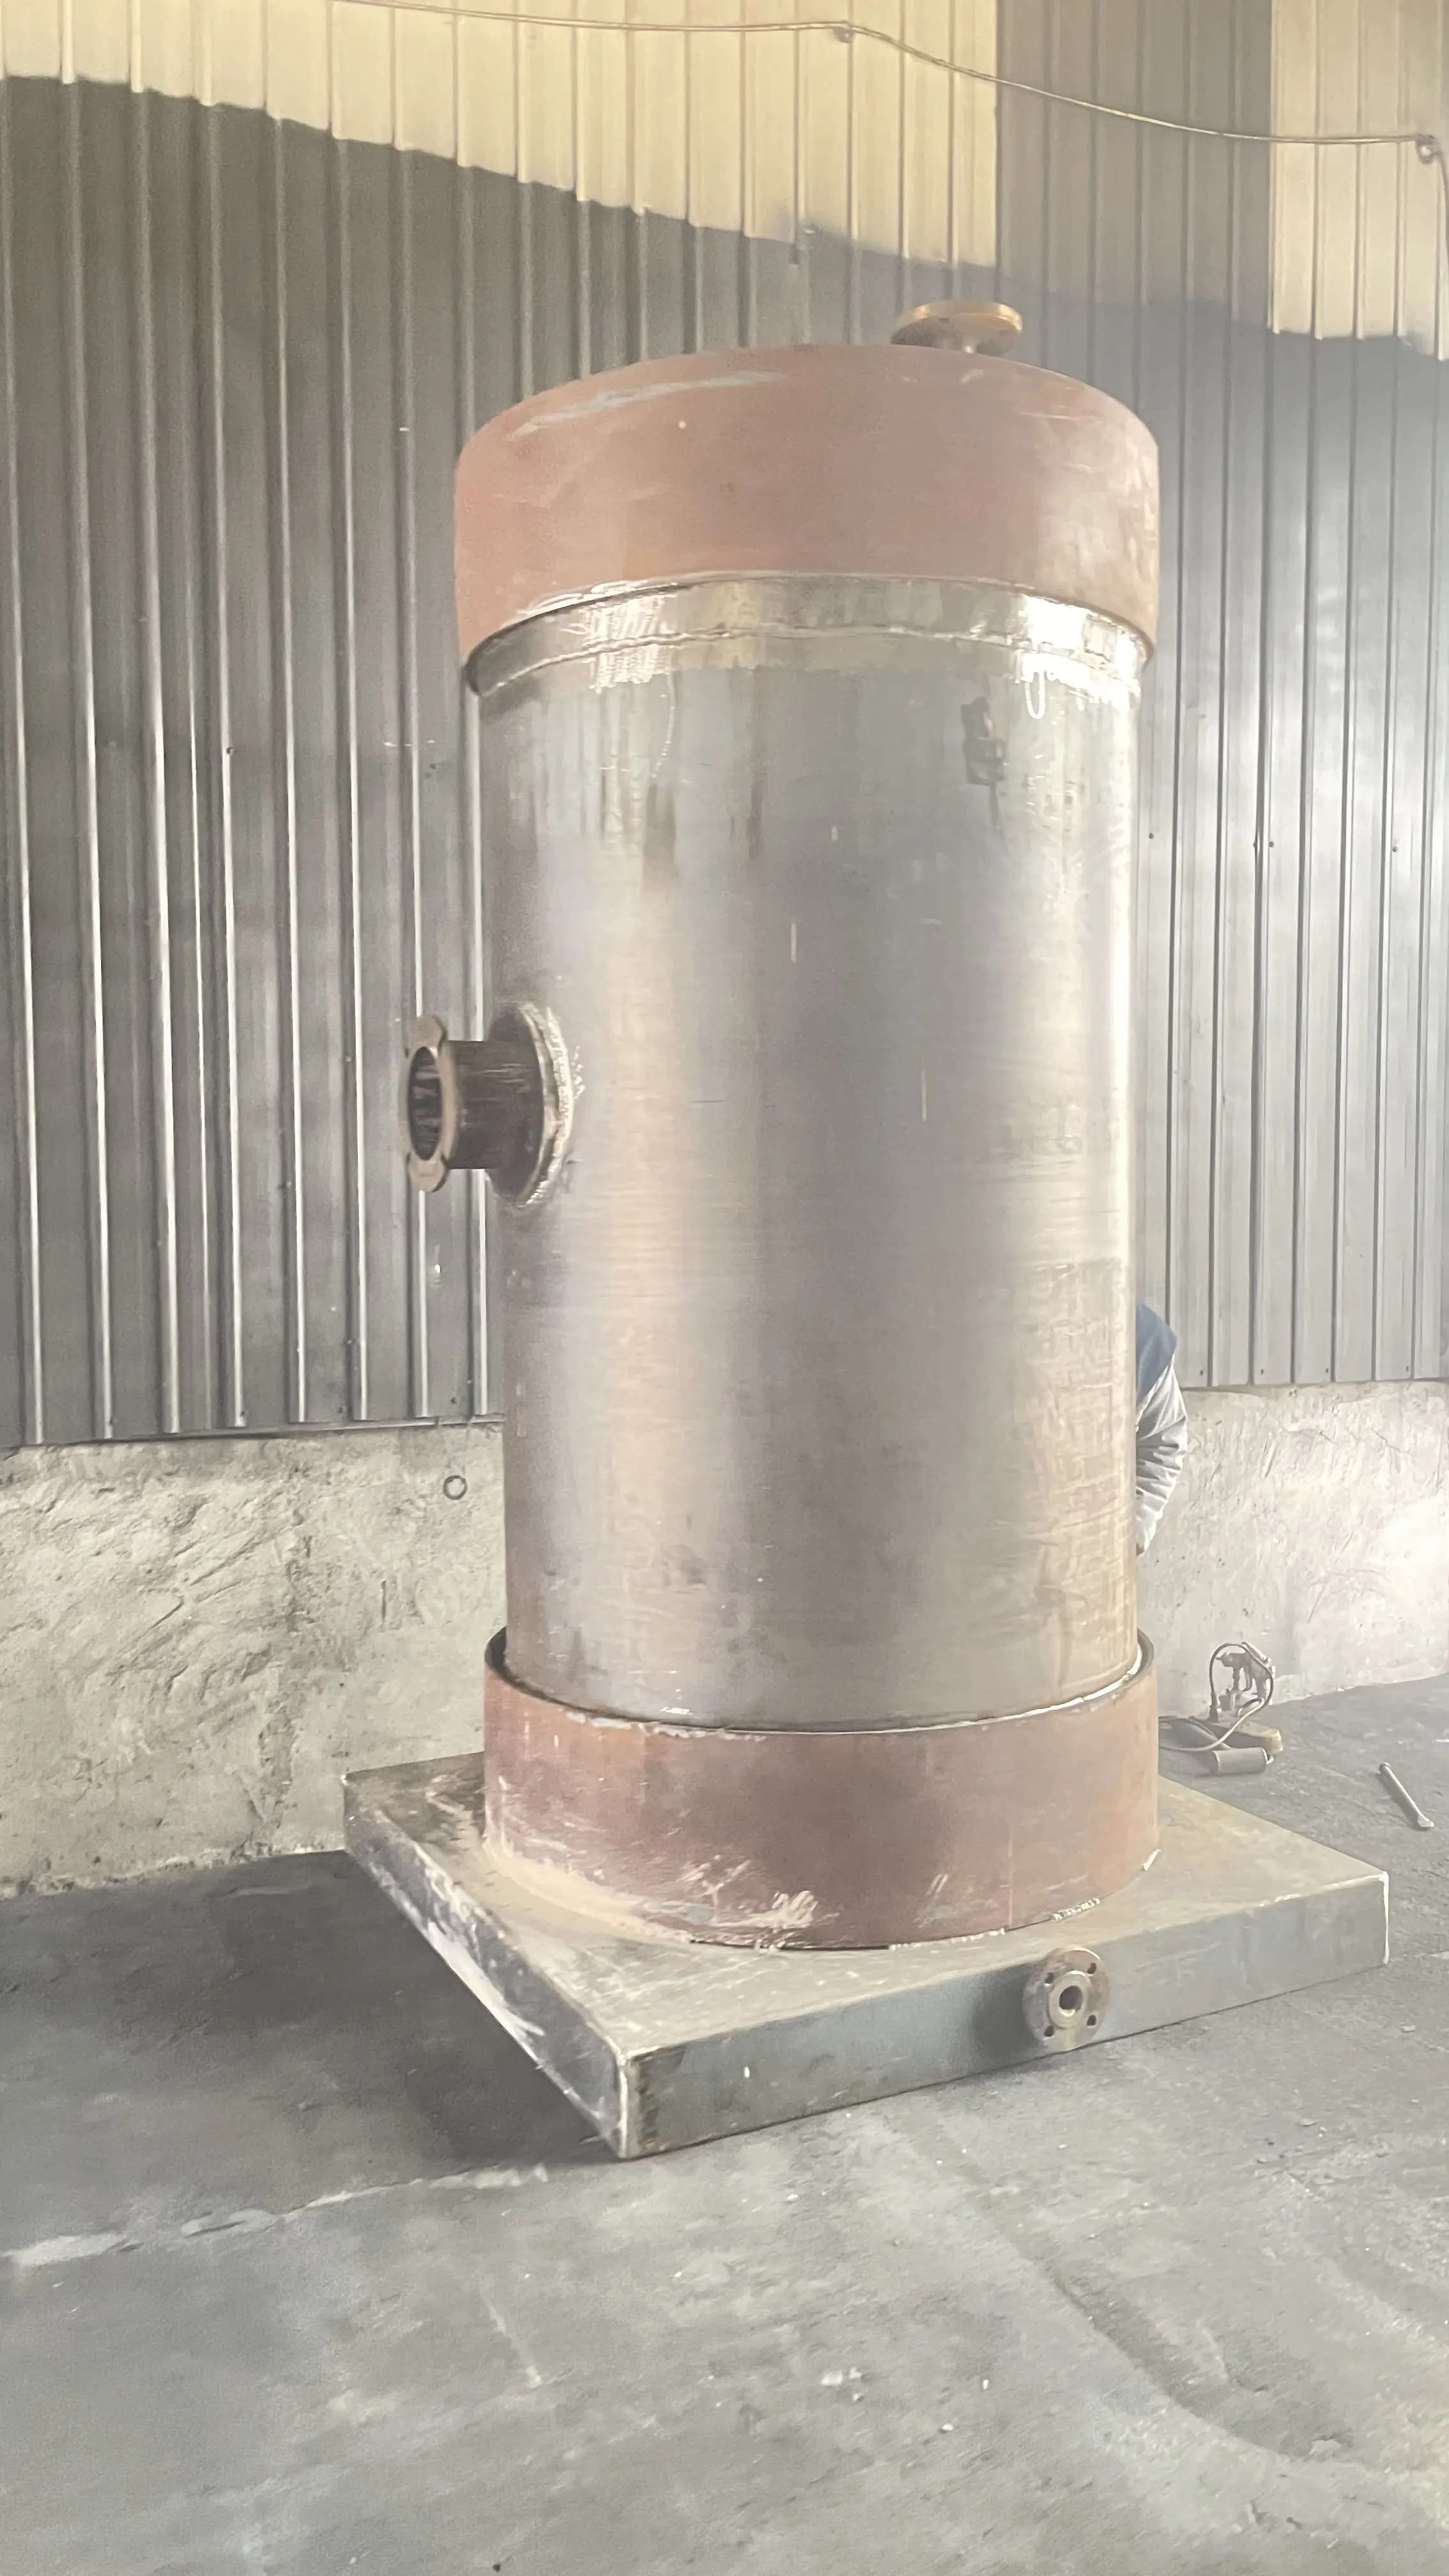 Caldeira de gerador de vapor industrial a gás Luz Vertical diesel/Gás gerador de vapor industrial caldeiras de vapor pequenas